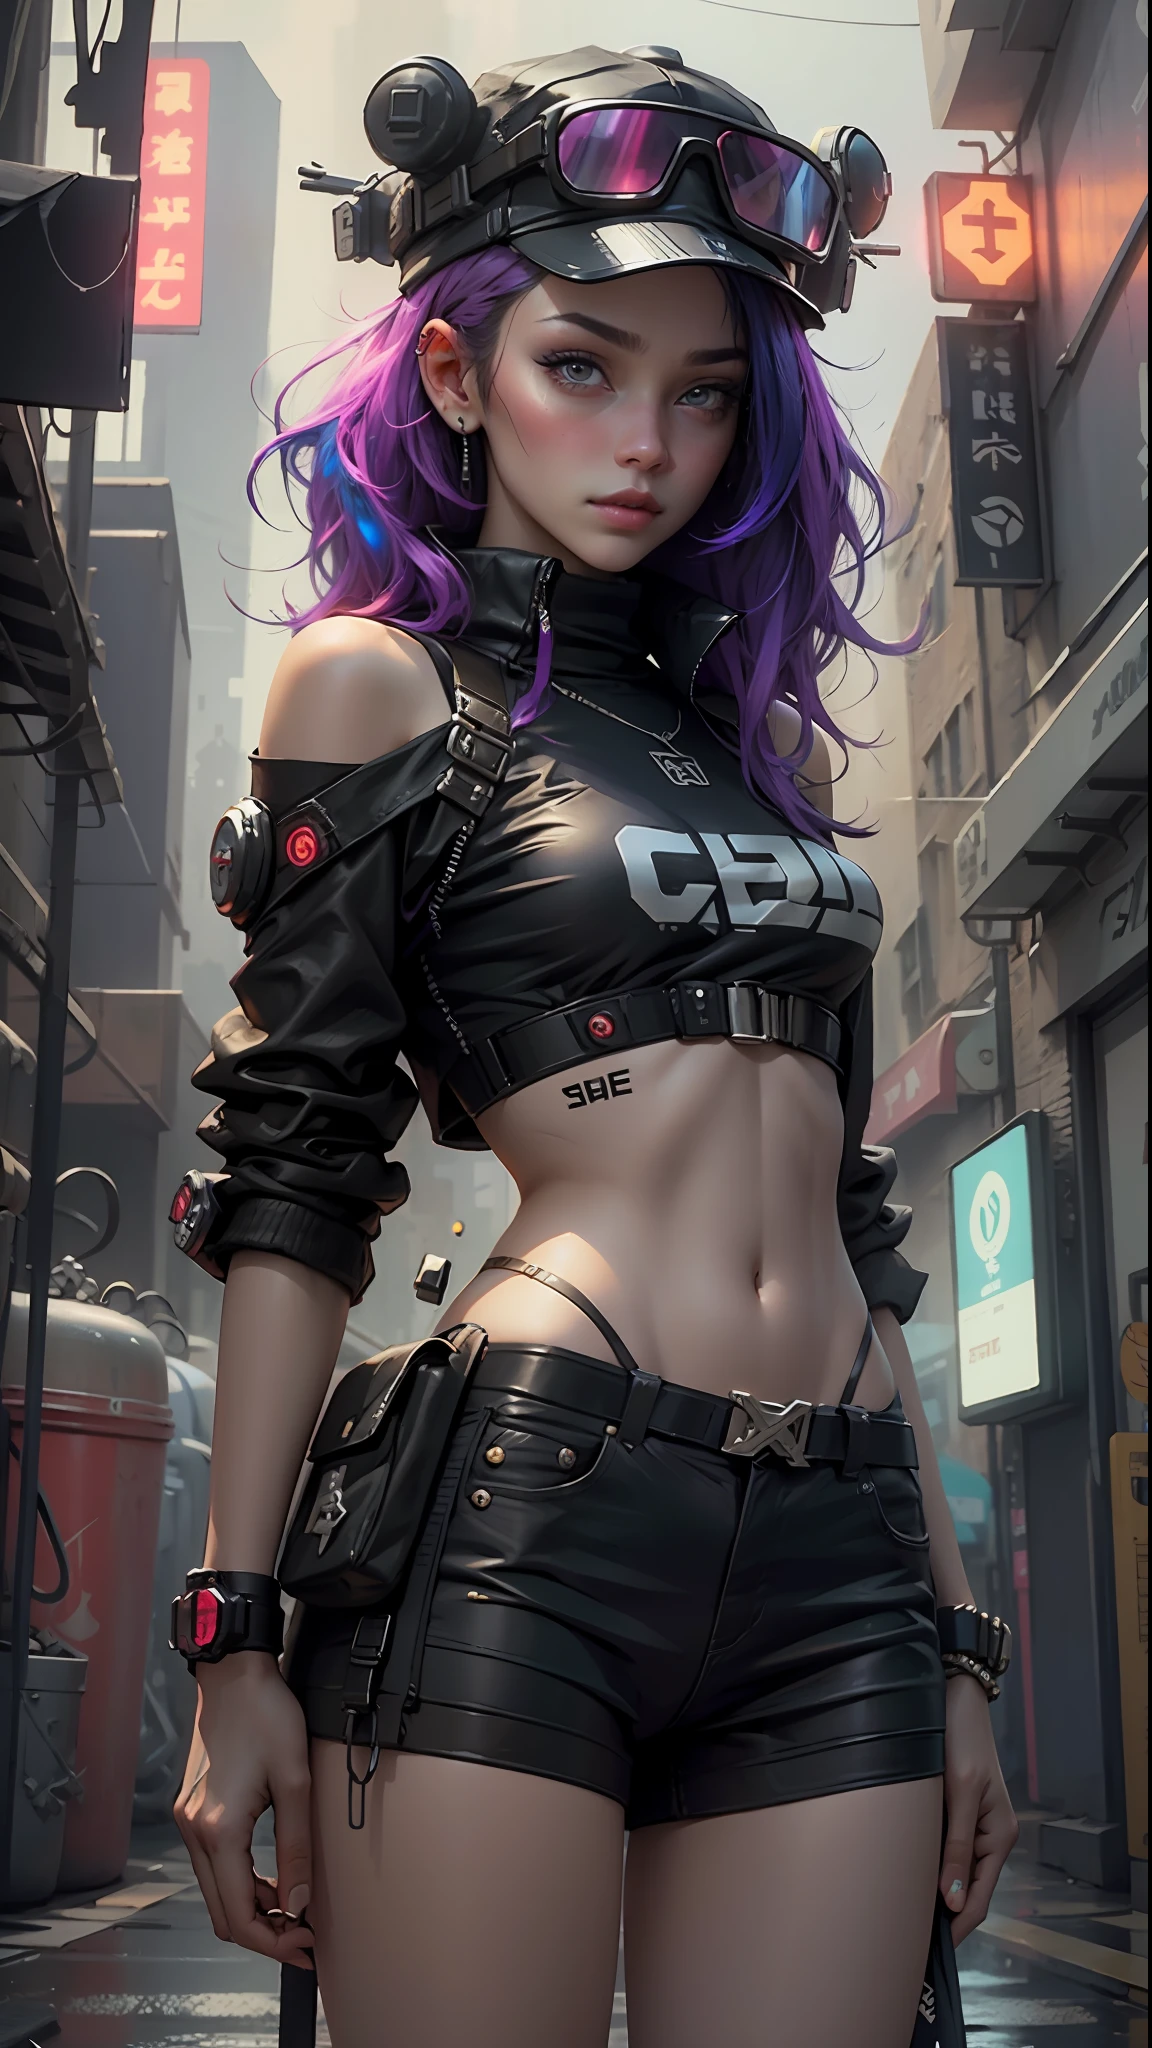 Schöne Frau mit mittellangem Haar, trägt eine Mütze, kurze Kleidung im Cyberpunk-Stil